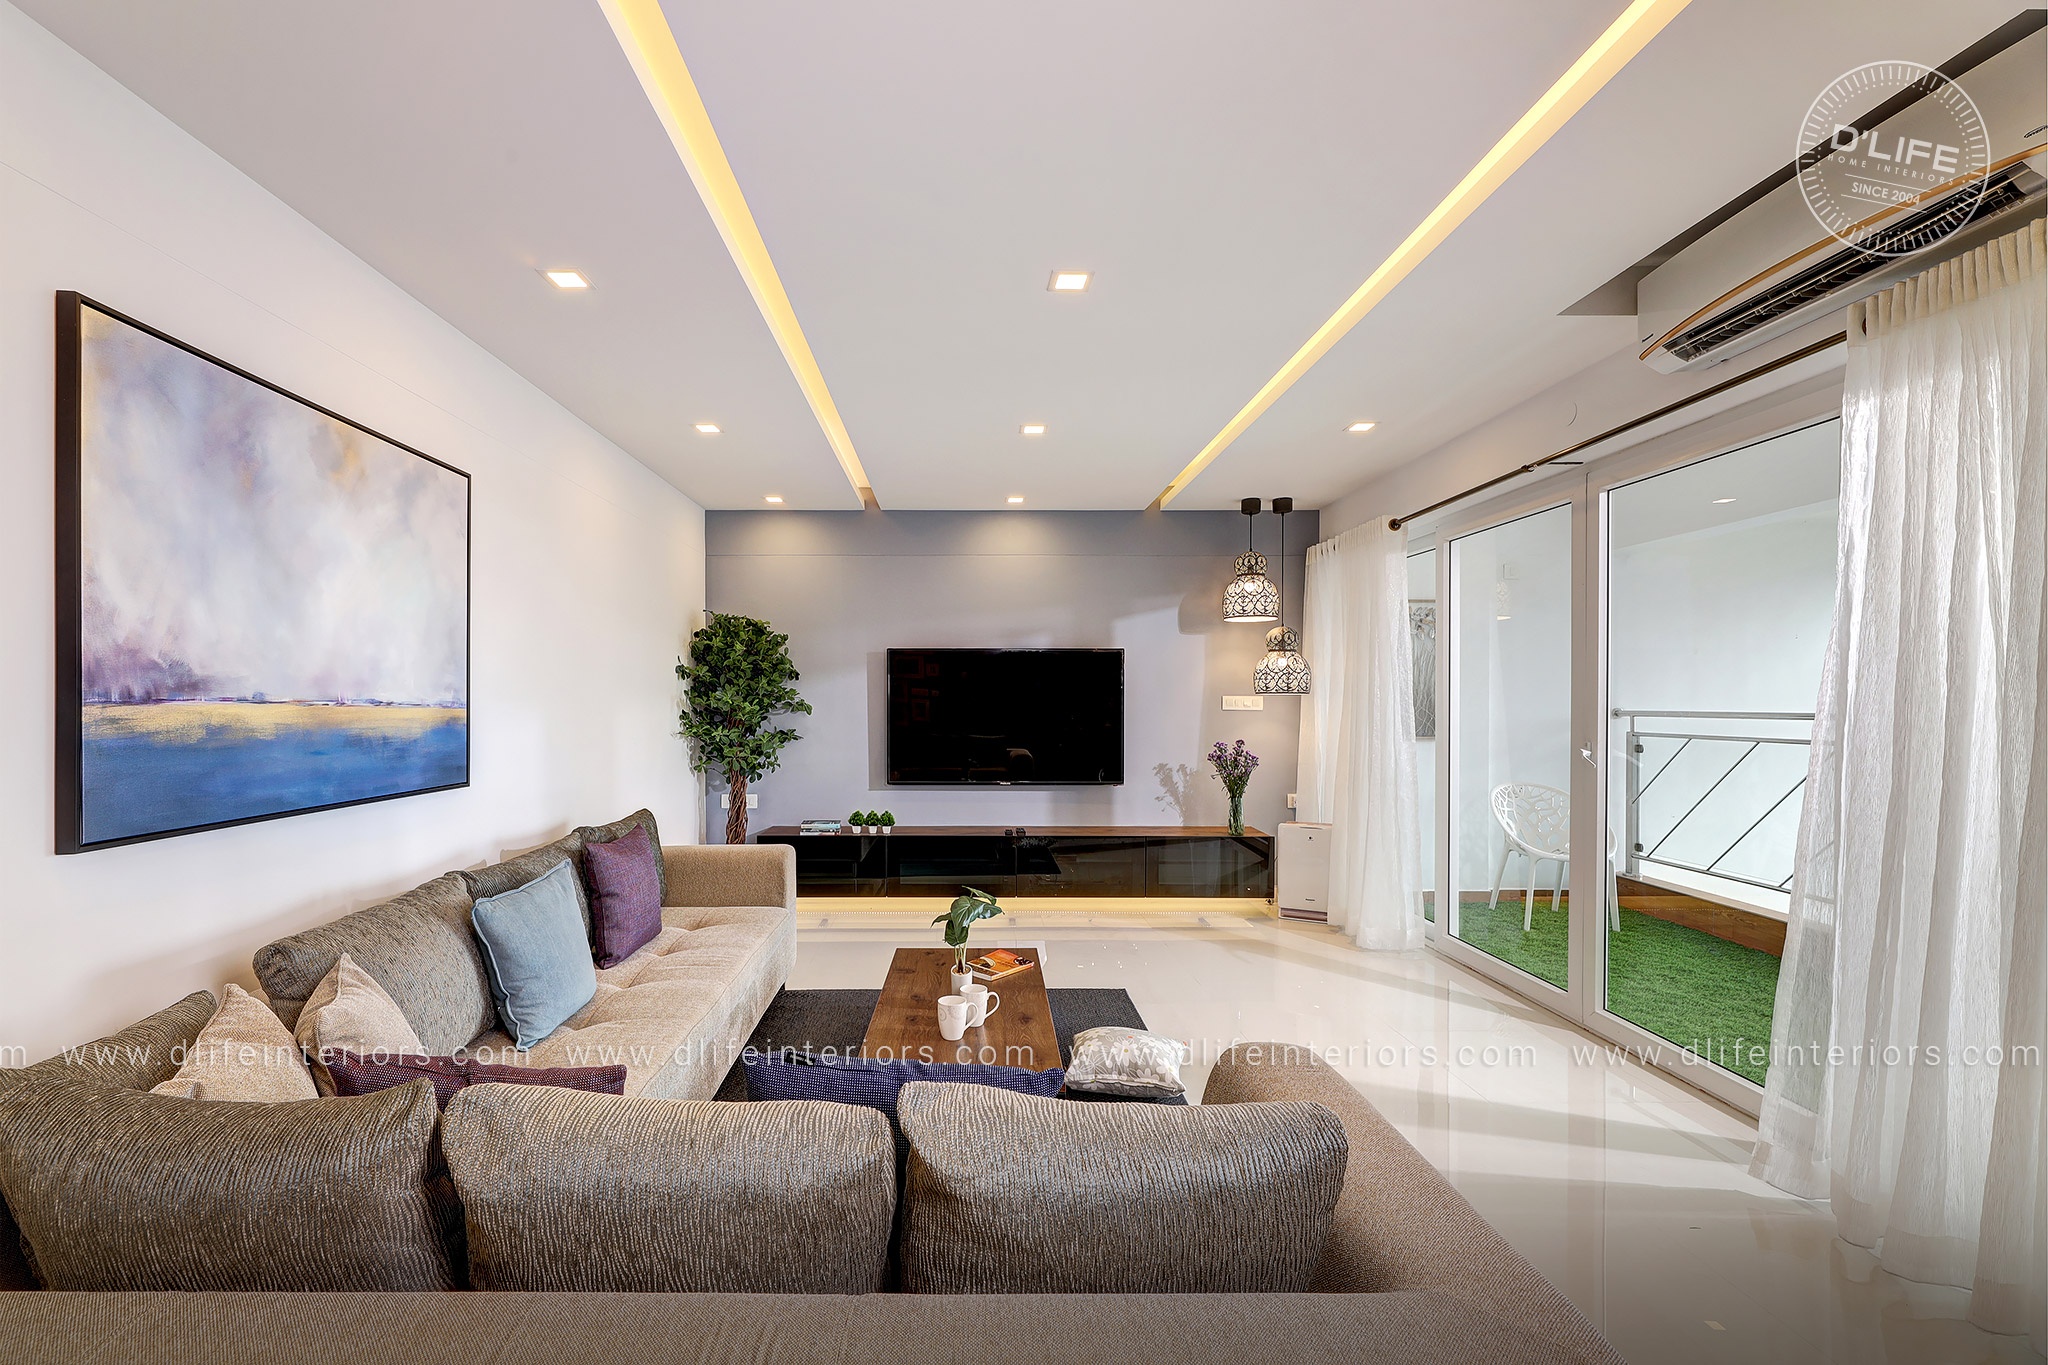 Free Interior Design Ideas for Home Decor